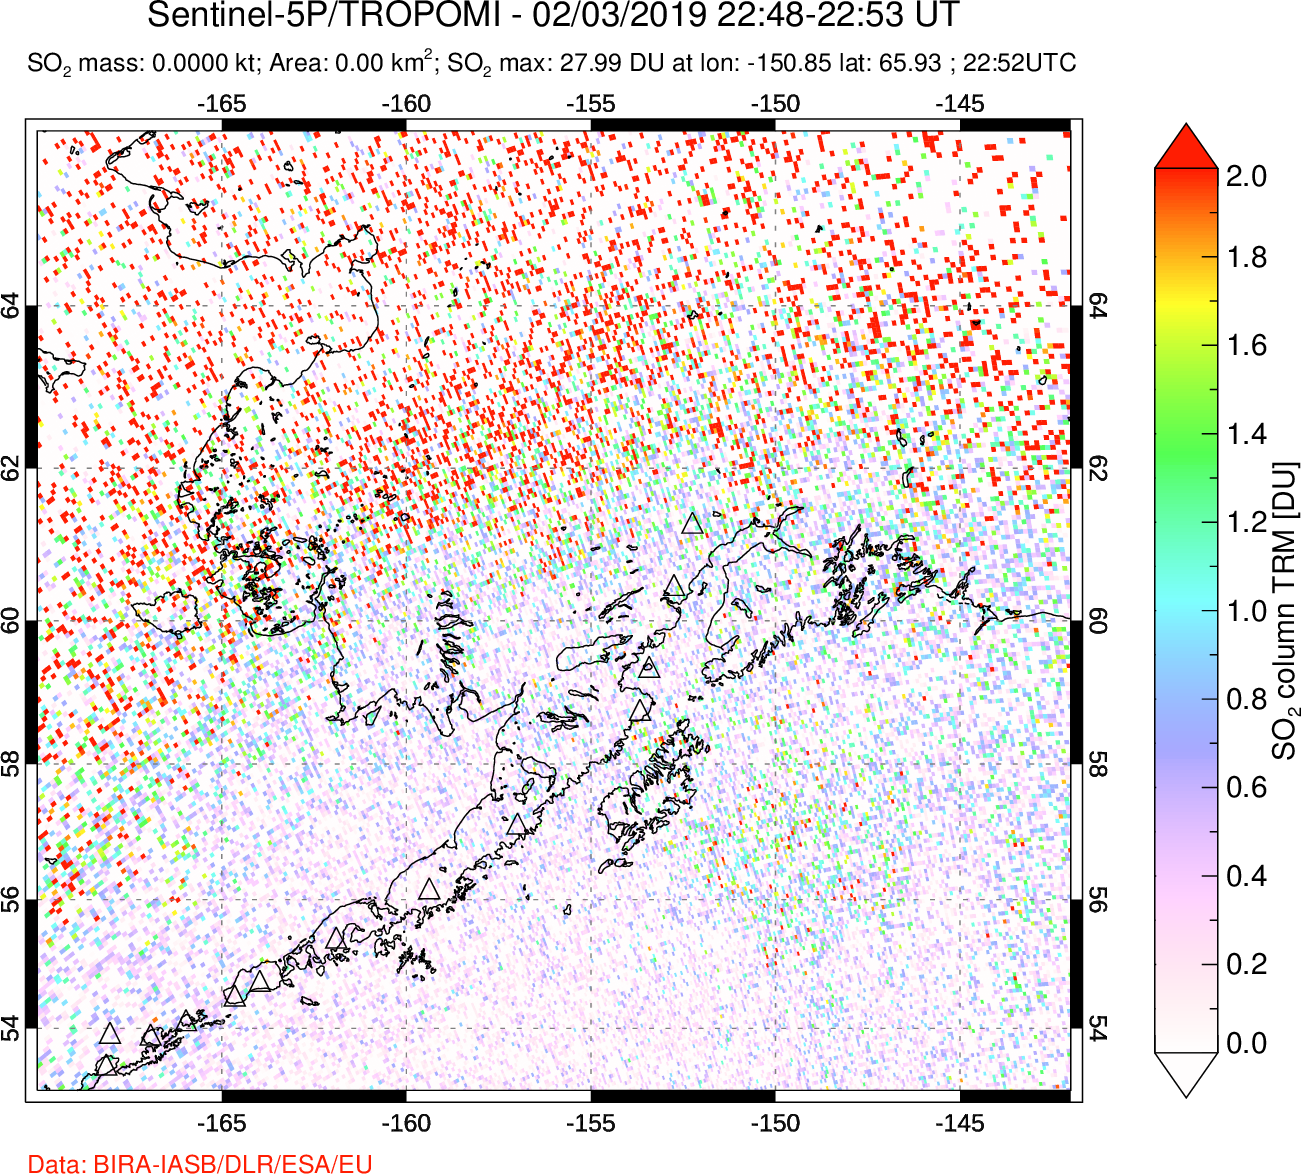 A sulfur dioxide image over Alaska, USA on Feb 03, 2019.